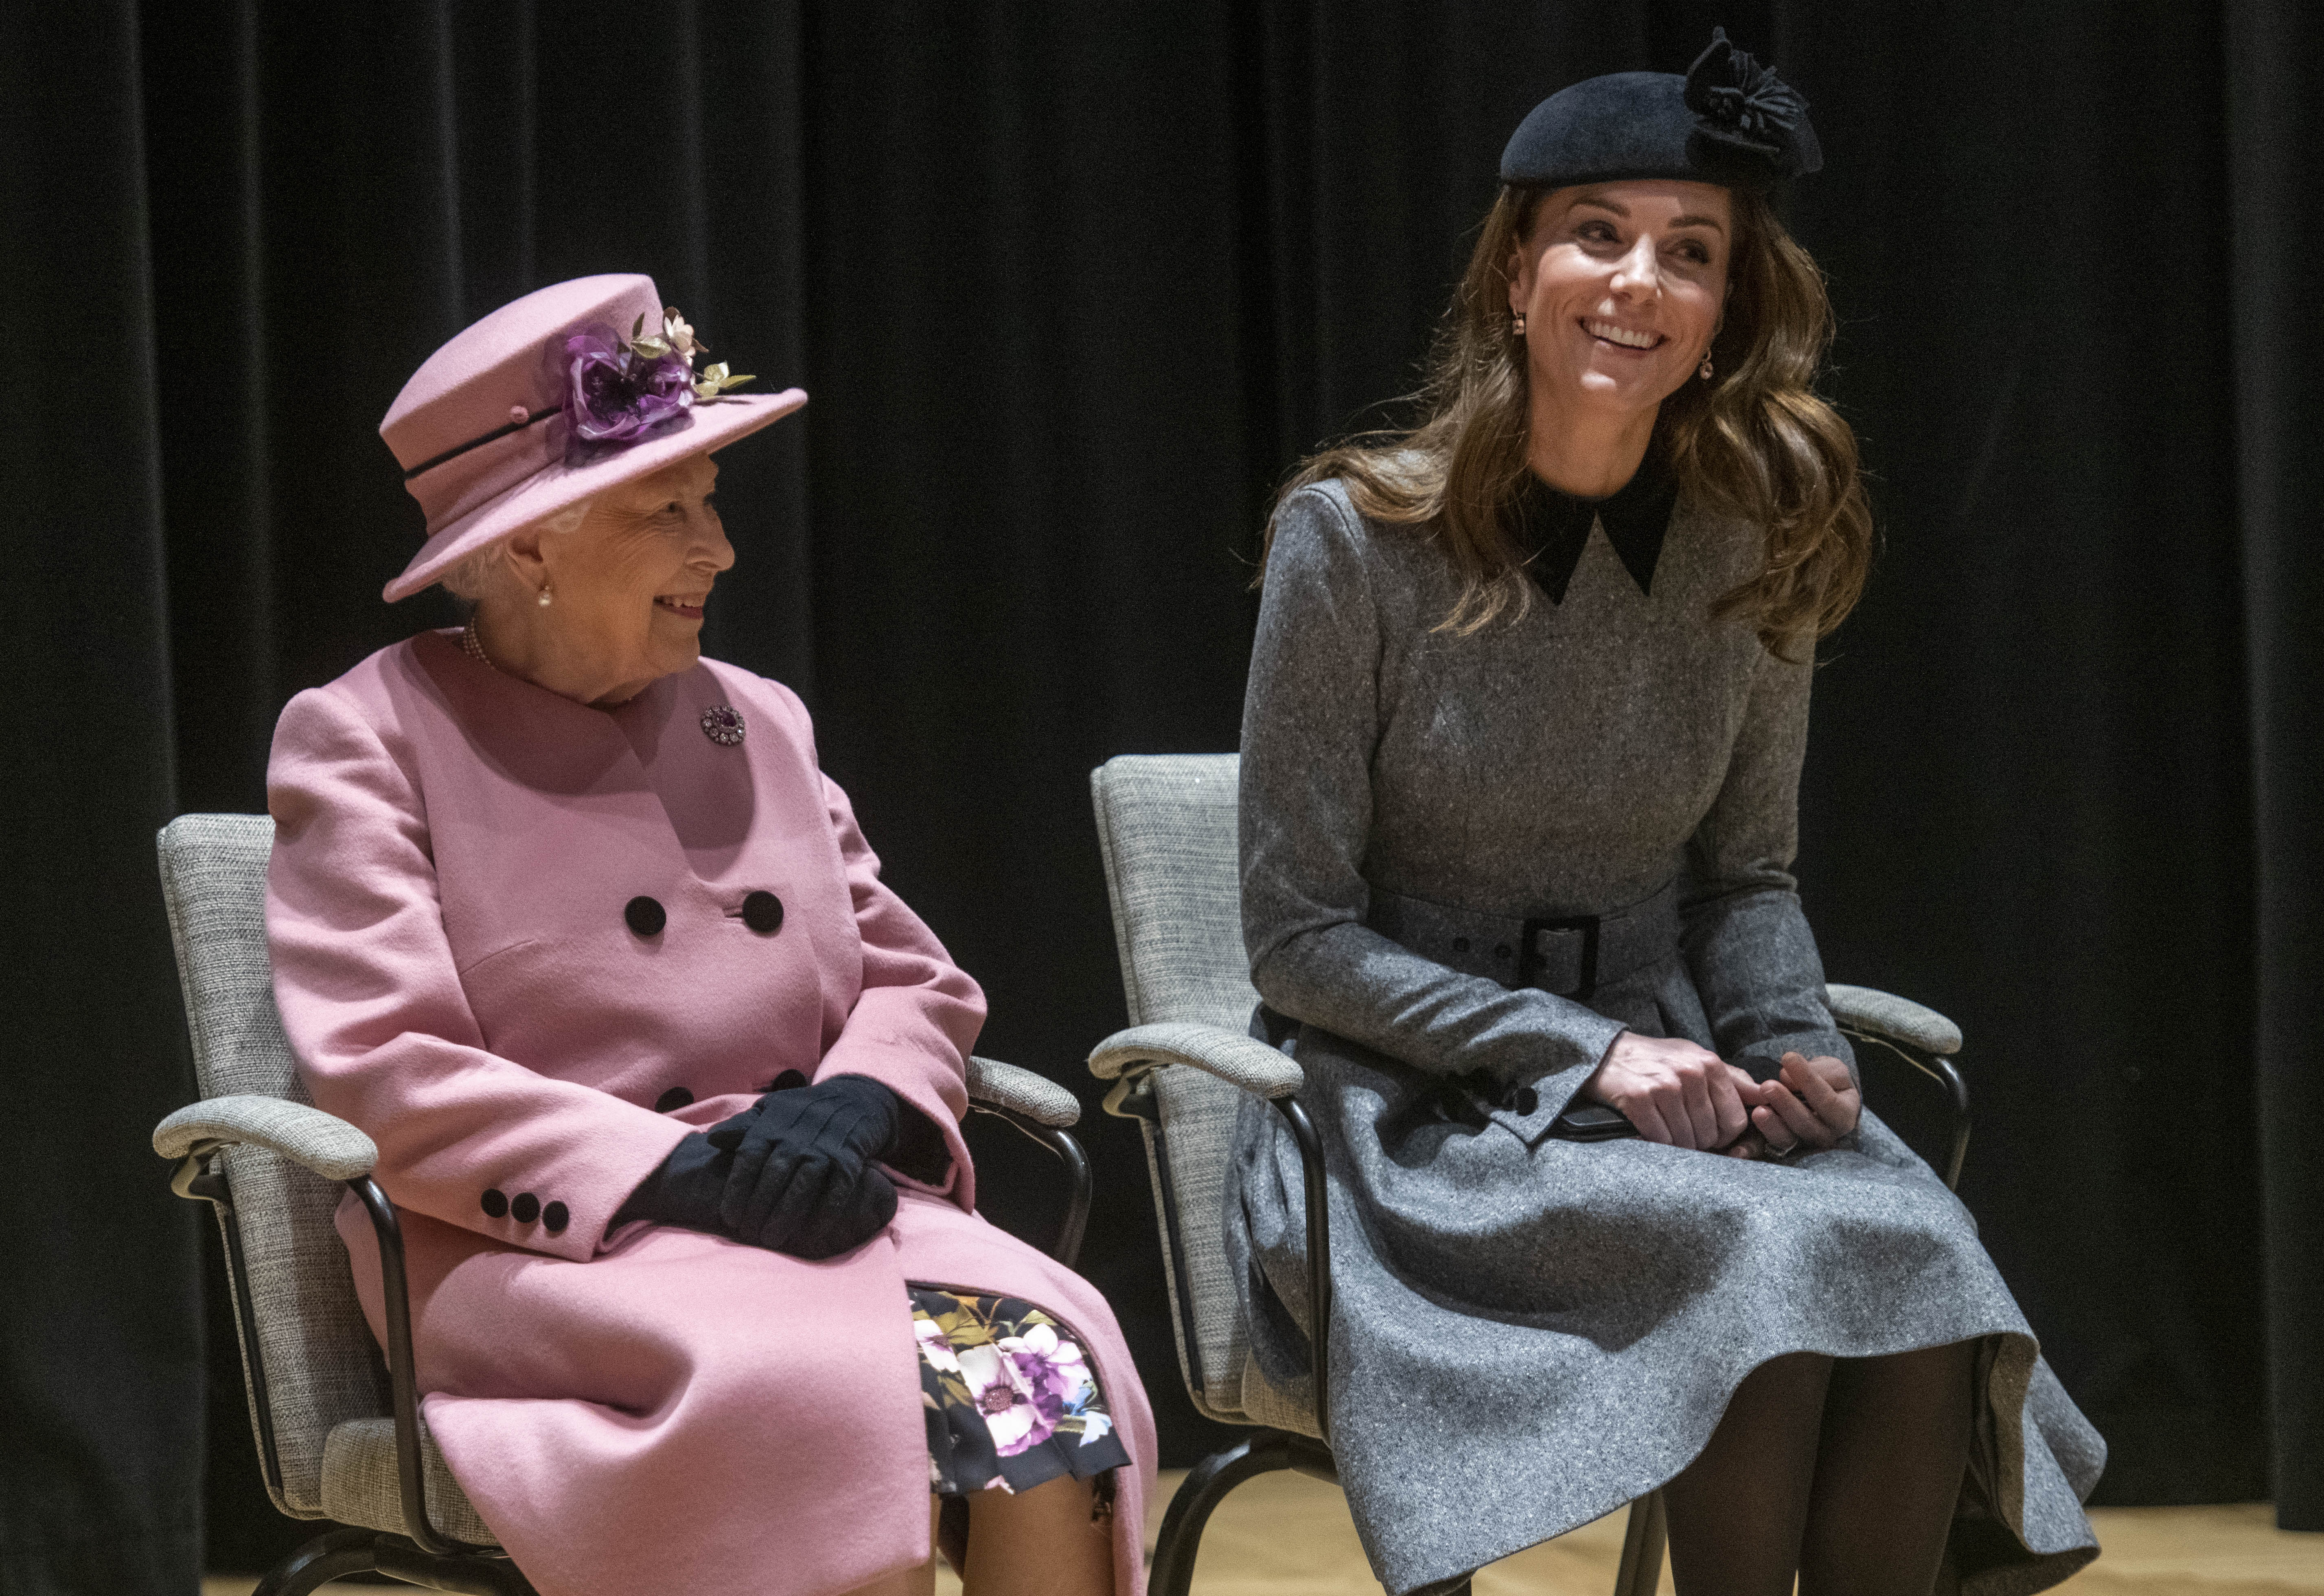 Königin Elizabeth II. und Kate Middleton am 19. März 2019 in London, England. | Quelle: Getty Images